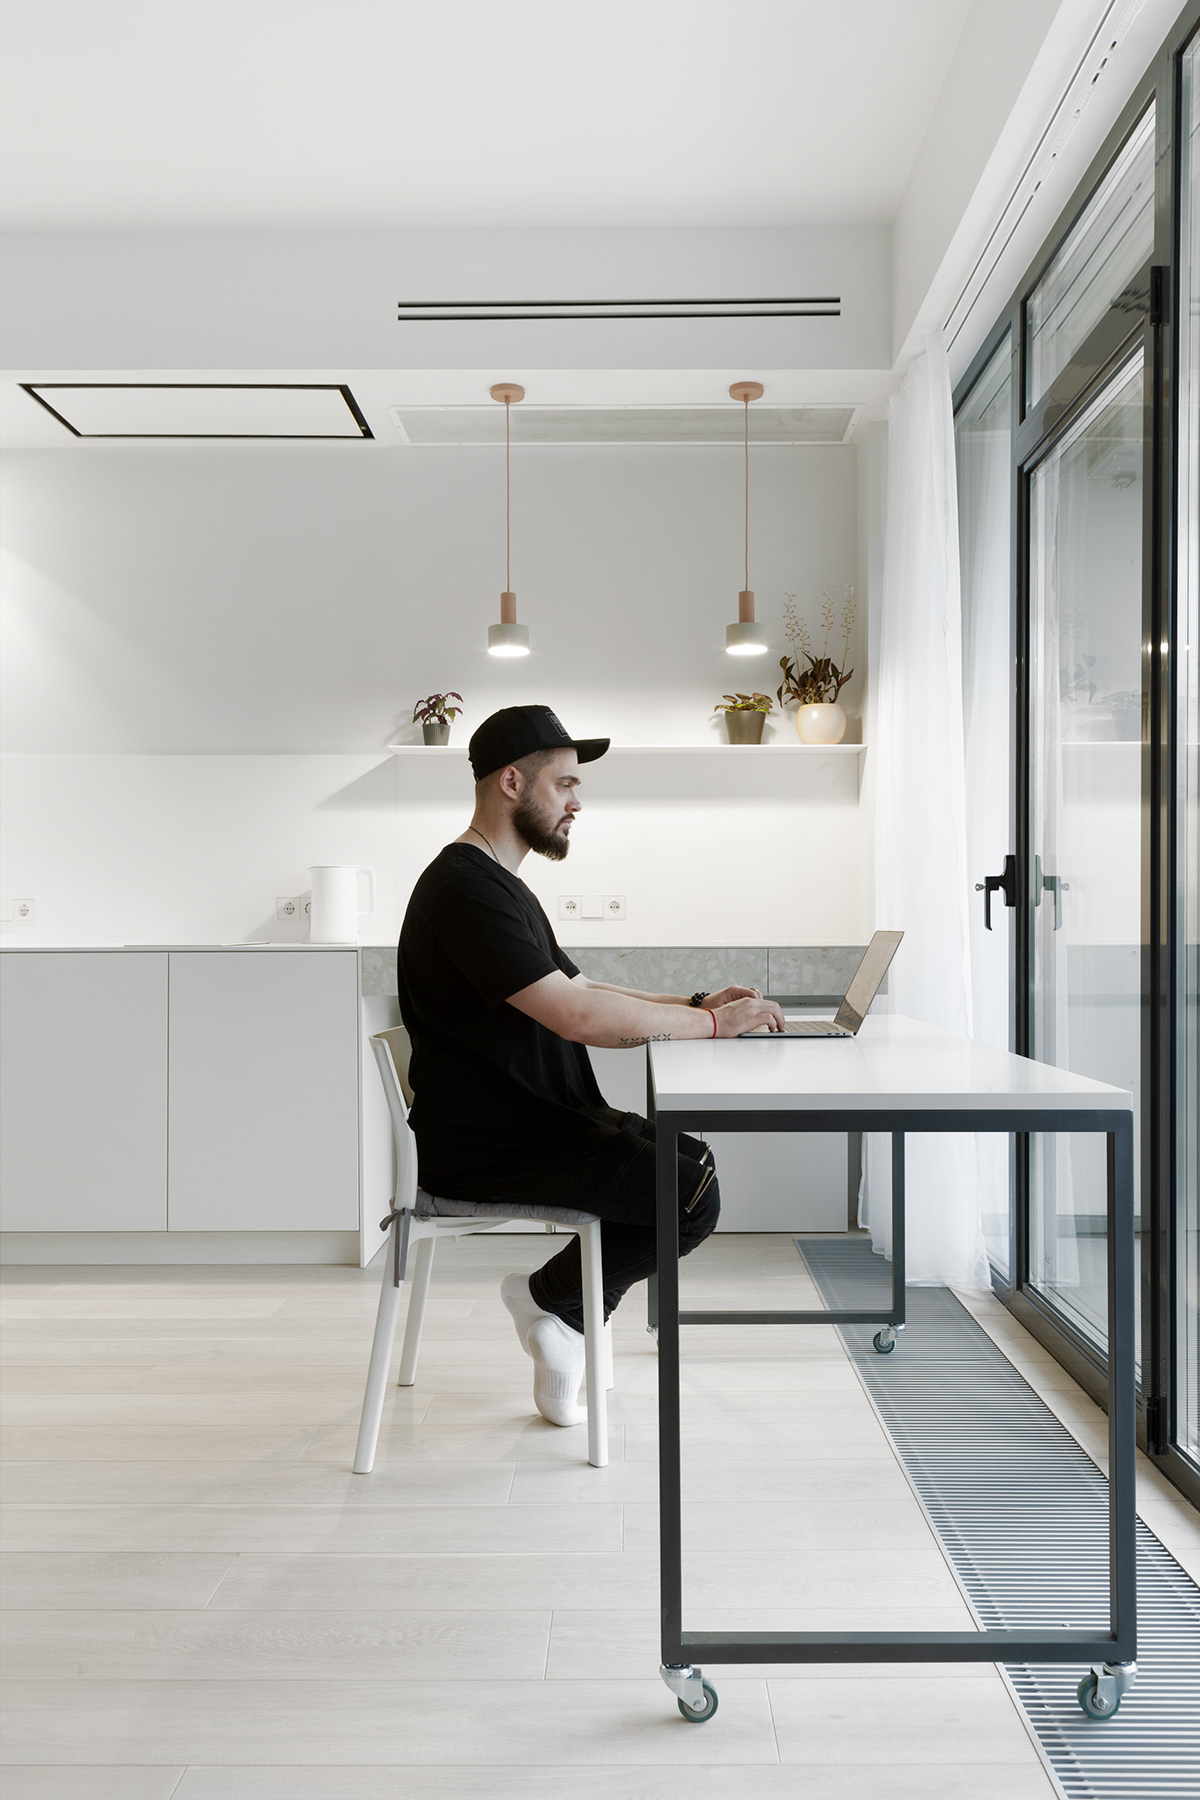 apartmentdesign architecture design designprojects Minimalism minimalistic minimalisticdesign